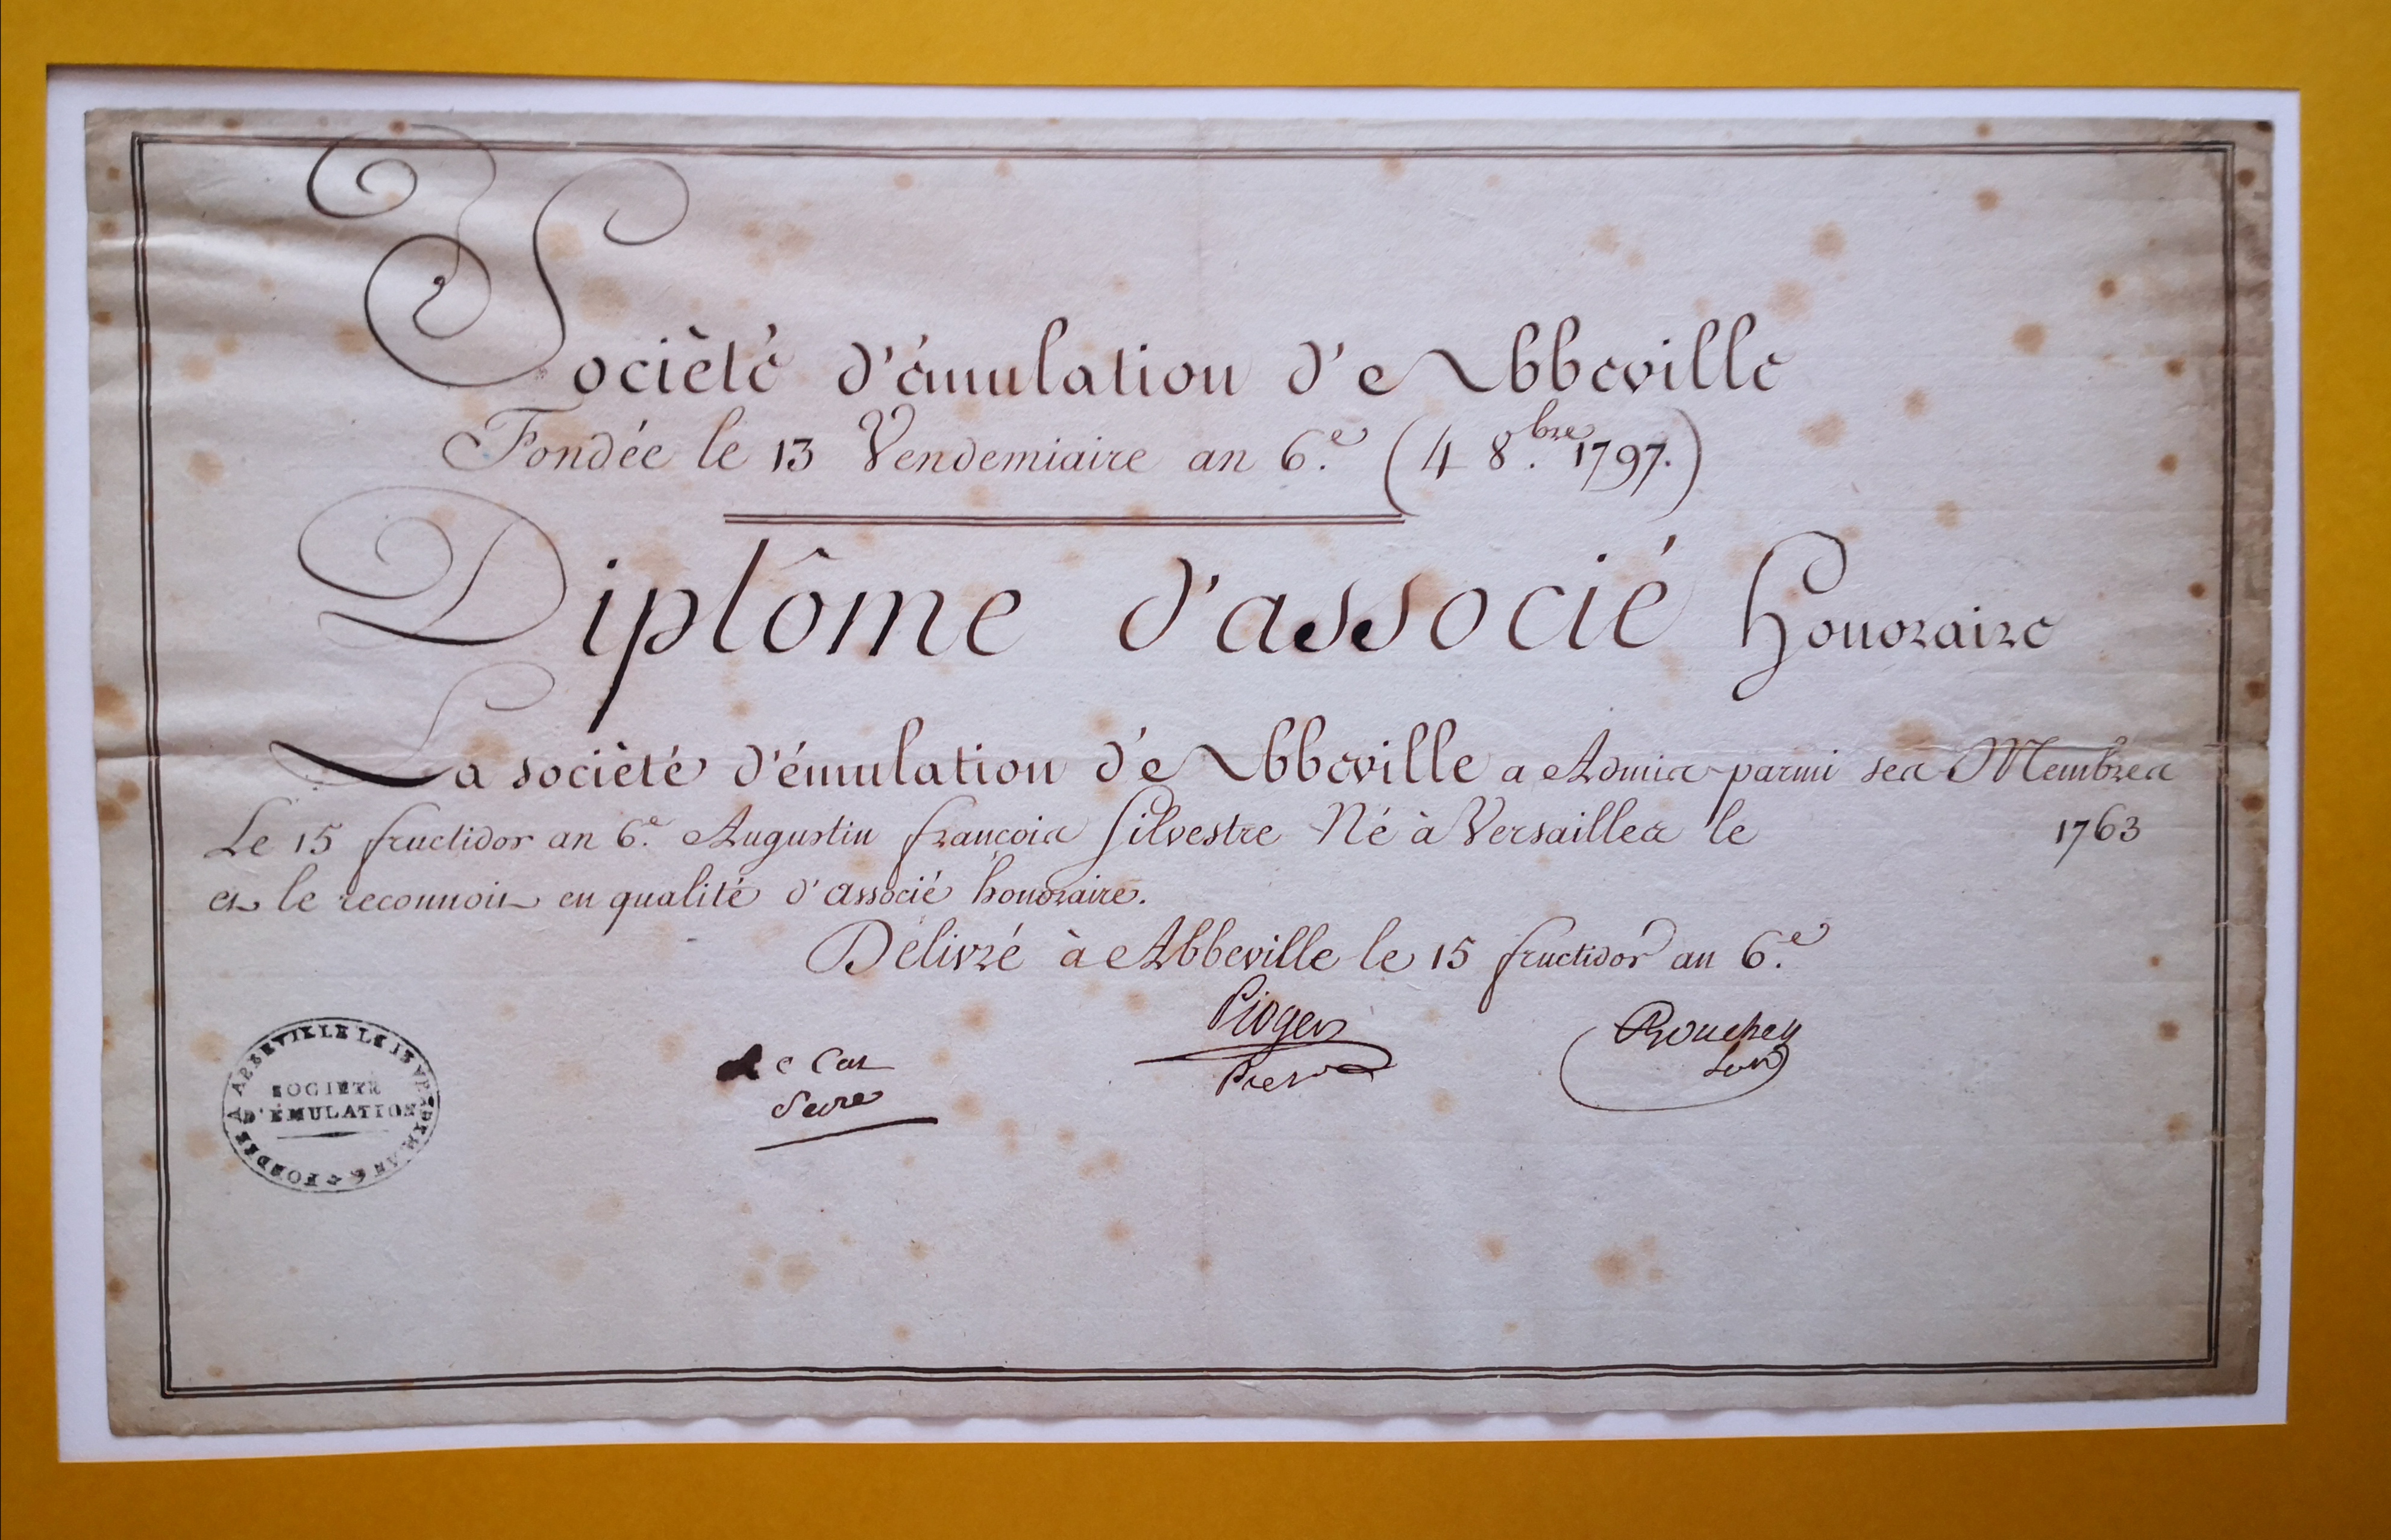  Diplôme d'associé honoraire de la Société d'Emulation de Abbeville décerné à Augustin-François de Silvestre - Document 1